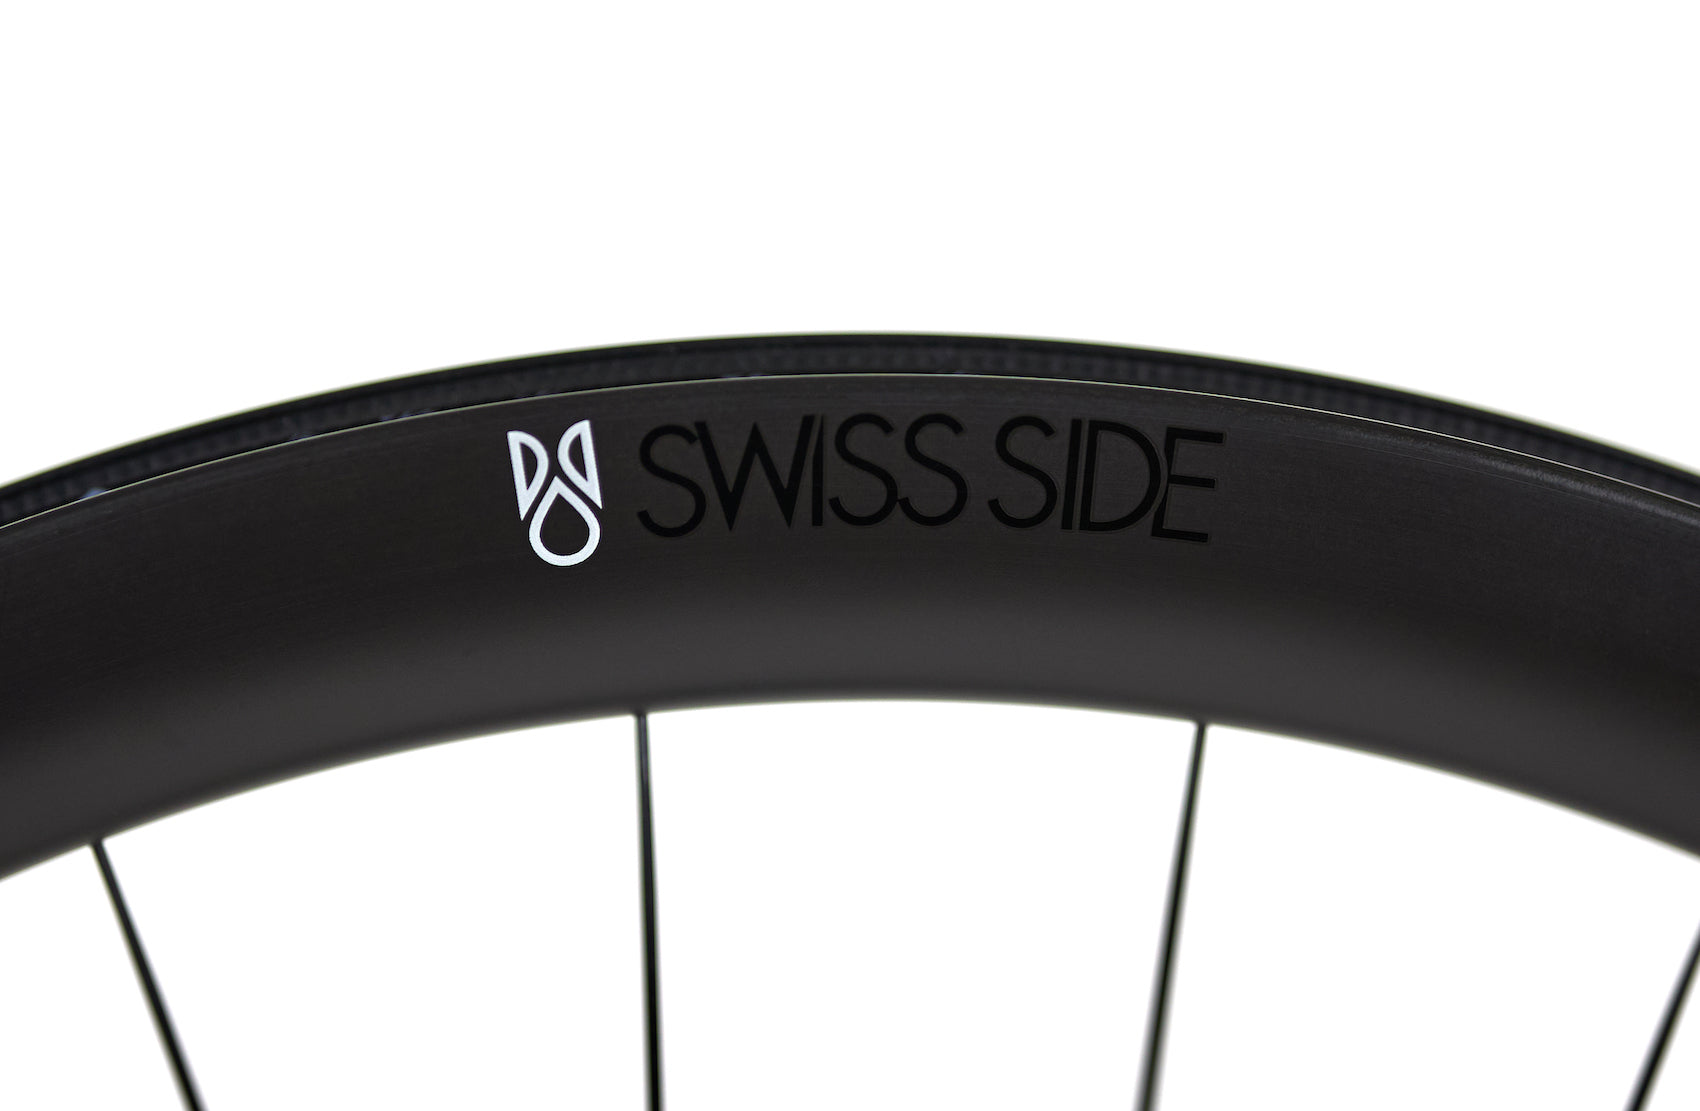 HADRON² All-Road Rear Wheel – Swiss Side